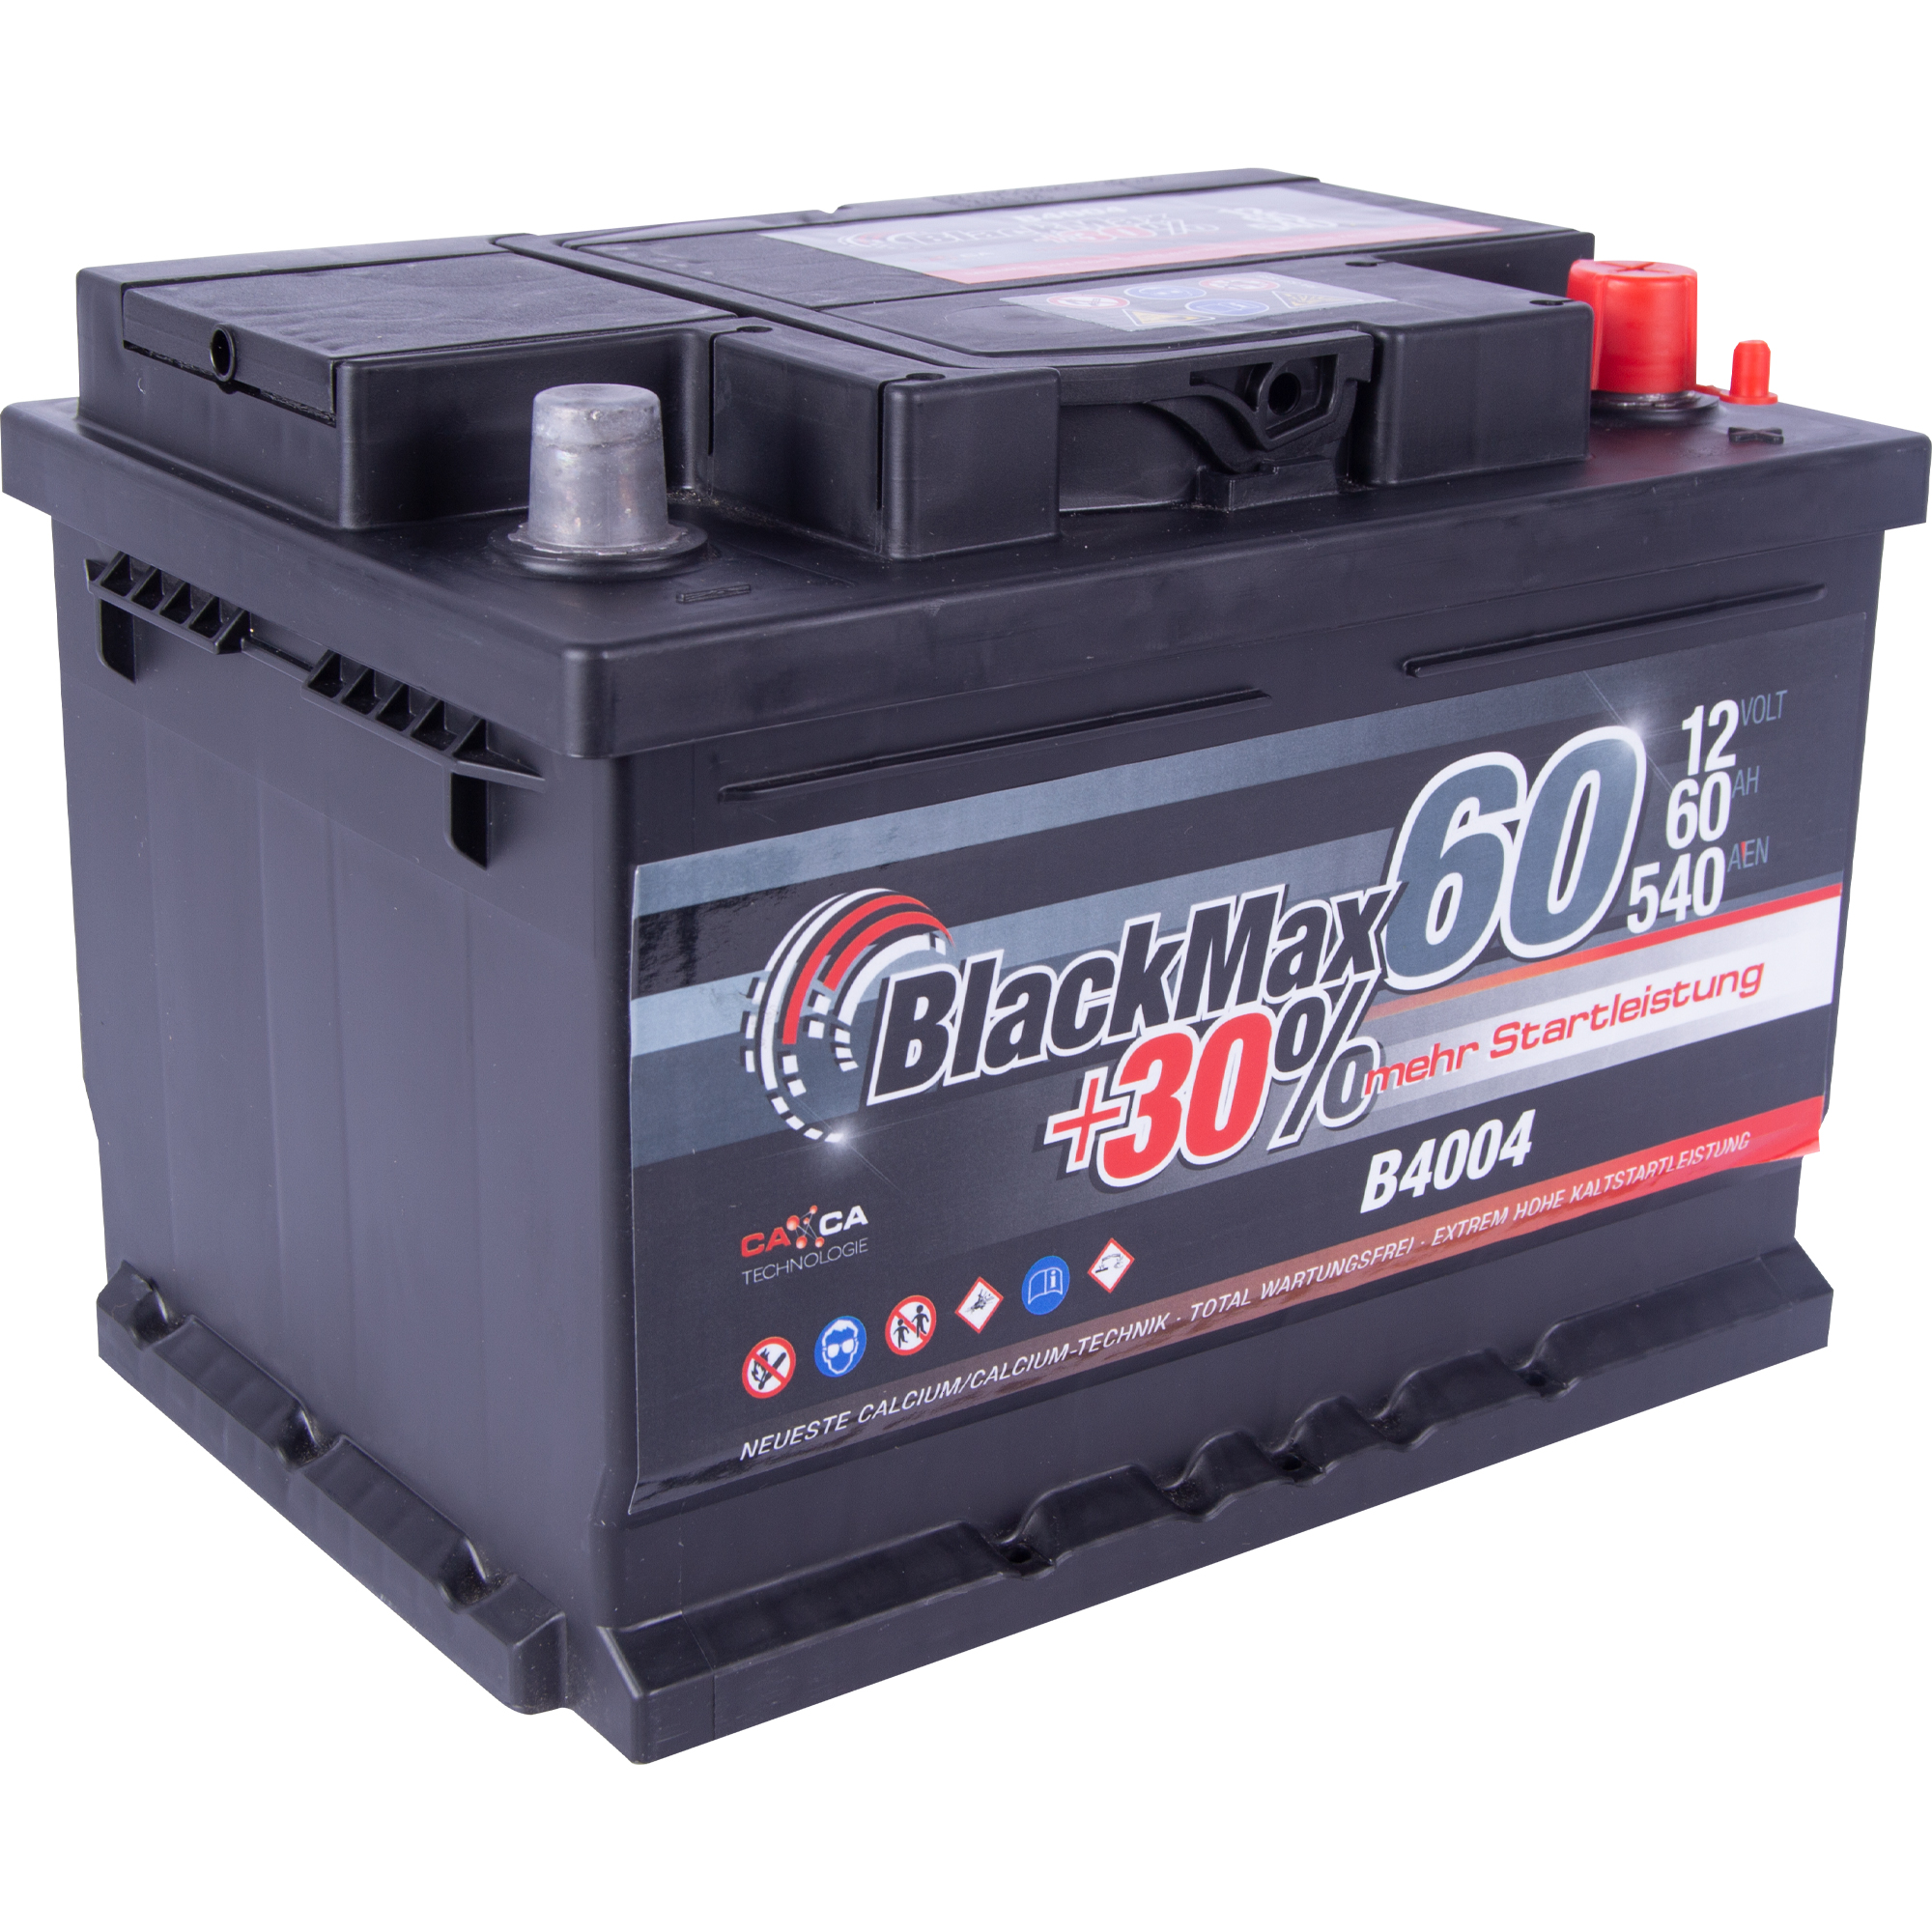 Аккумулятор автомобильный BlackMax 60Ah 540A (EN) BlackMax B4004